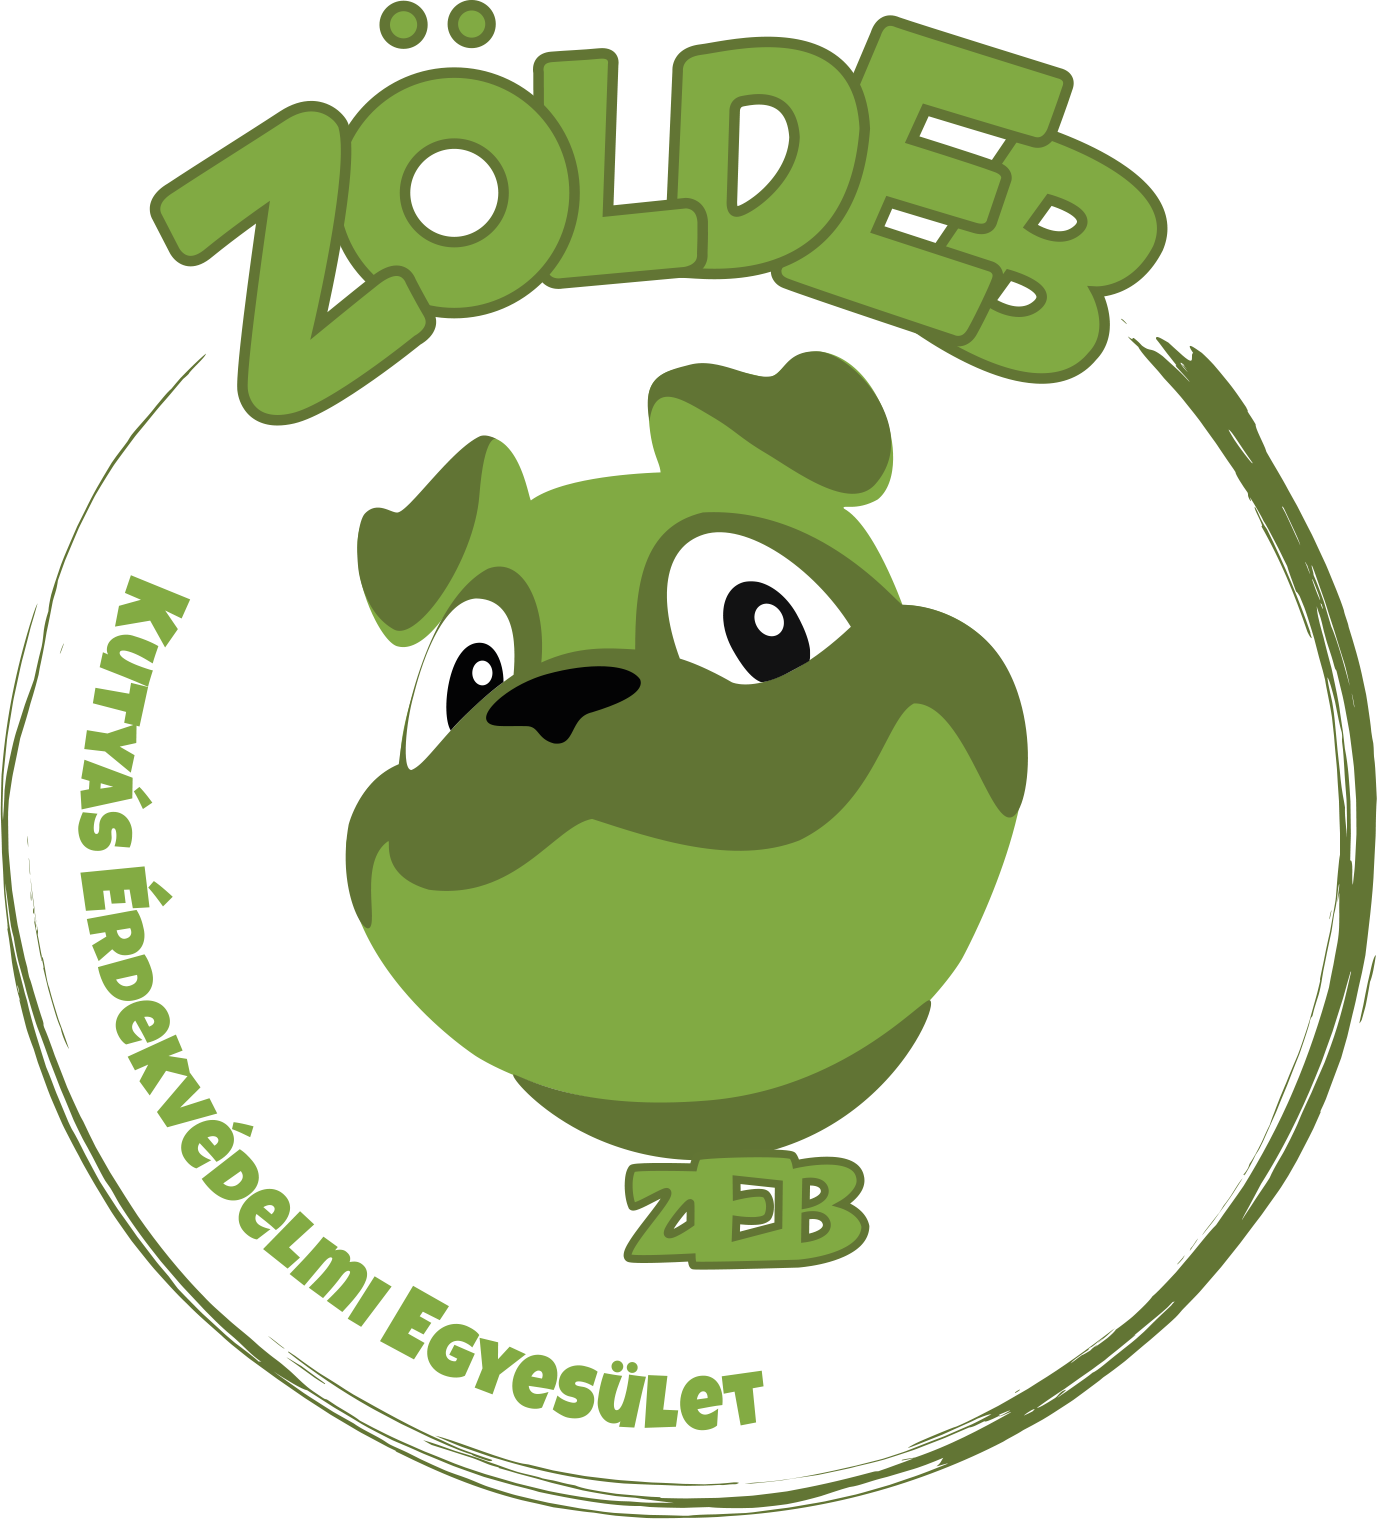 ZöldEb Kutyás Érdekvédelmi Egyesület logója